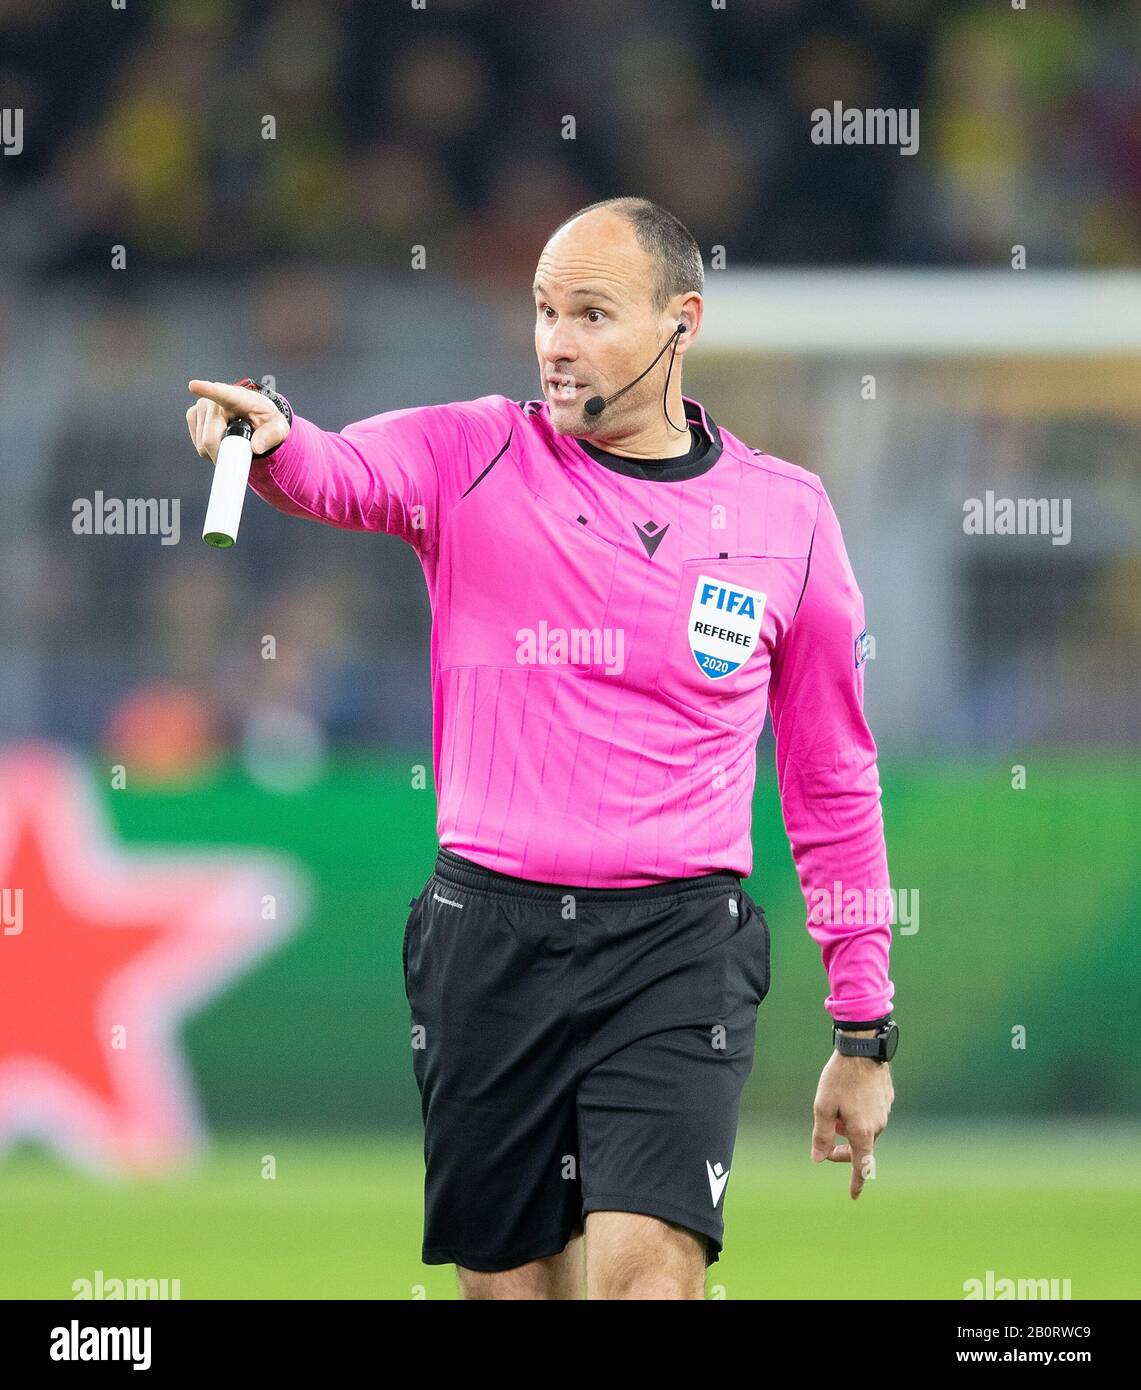 Referee Uniforms - taso soccer san antonio